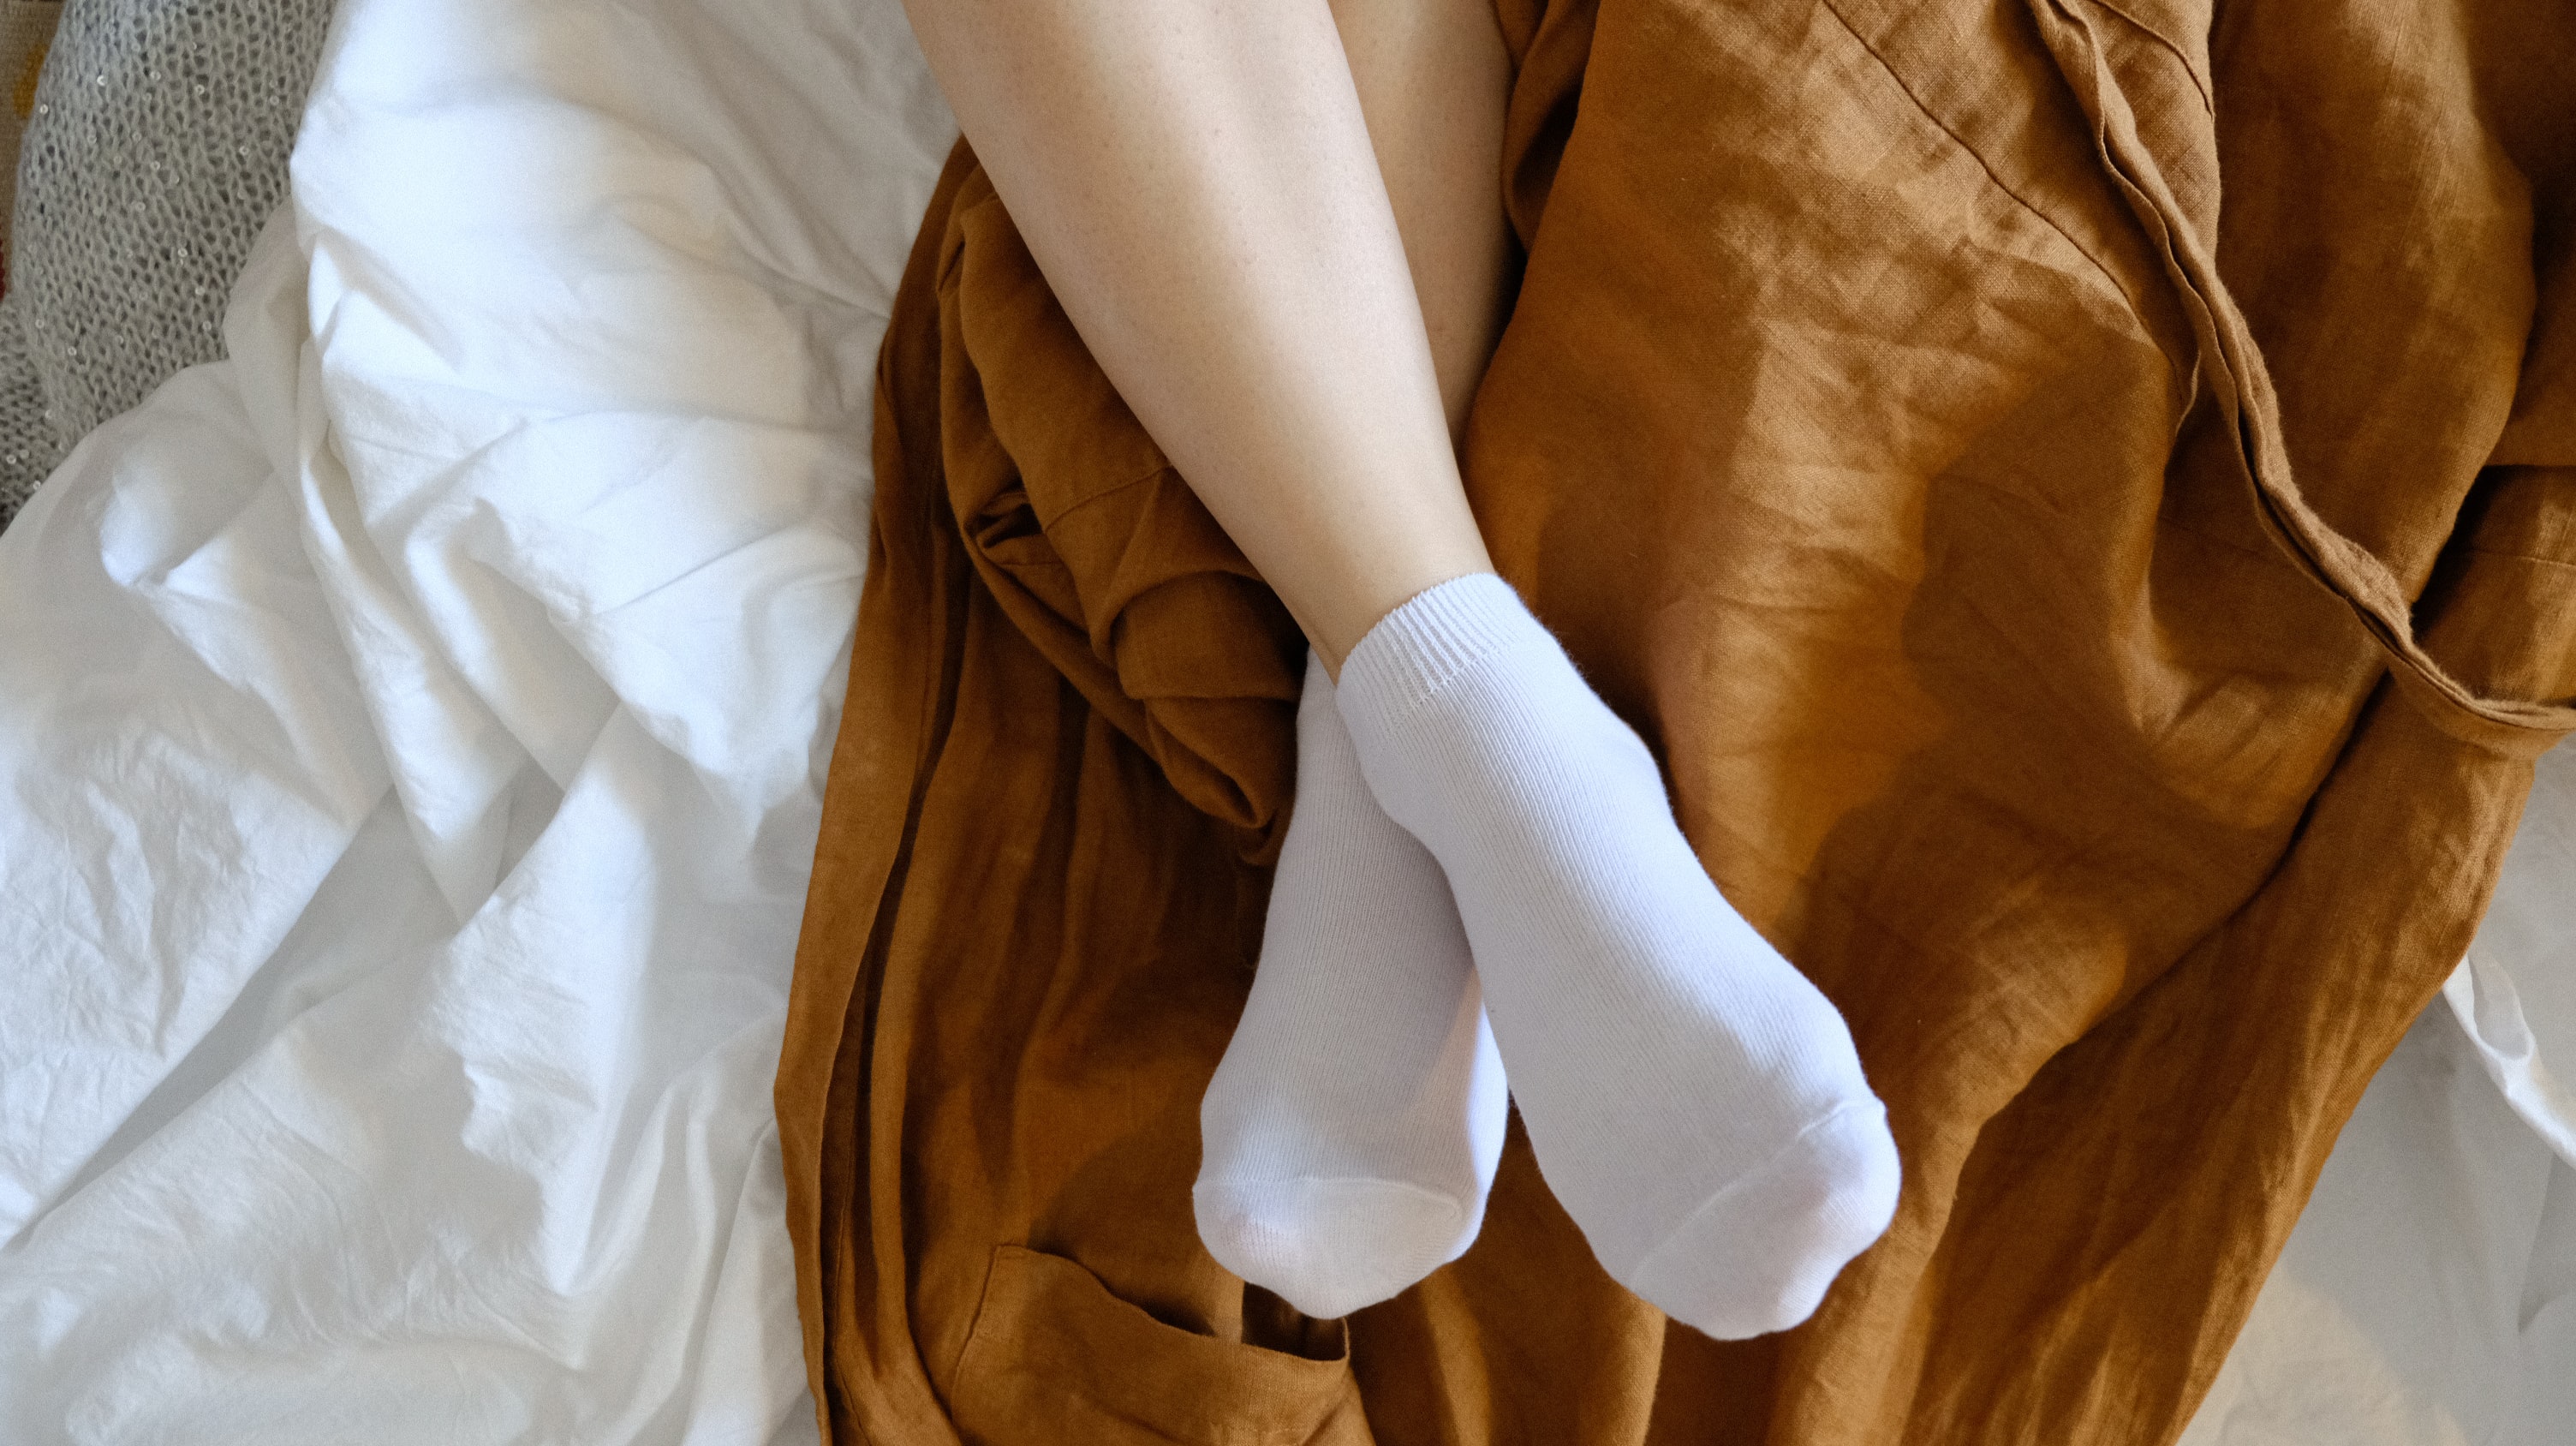 Socks White Socks Short Socks Legs Feet In Bed Linen Robe High Angle Feet Crossed Women Model Women  3008x1688